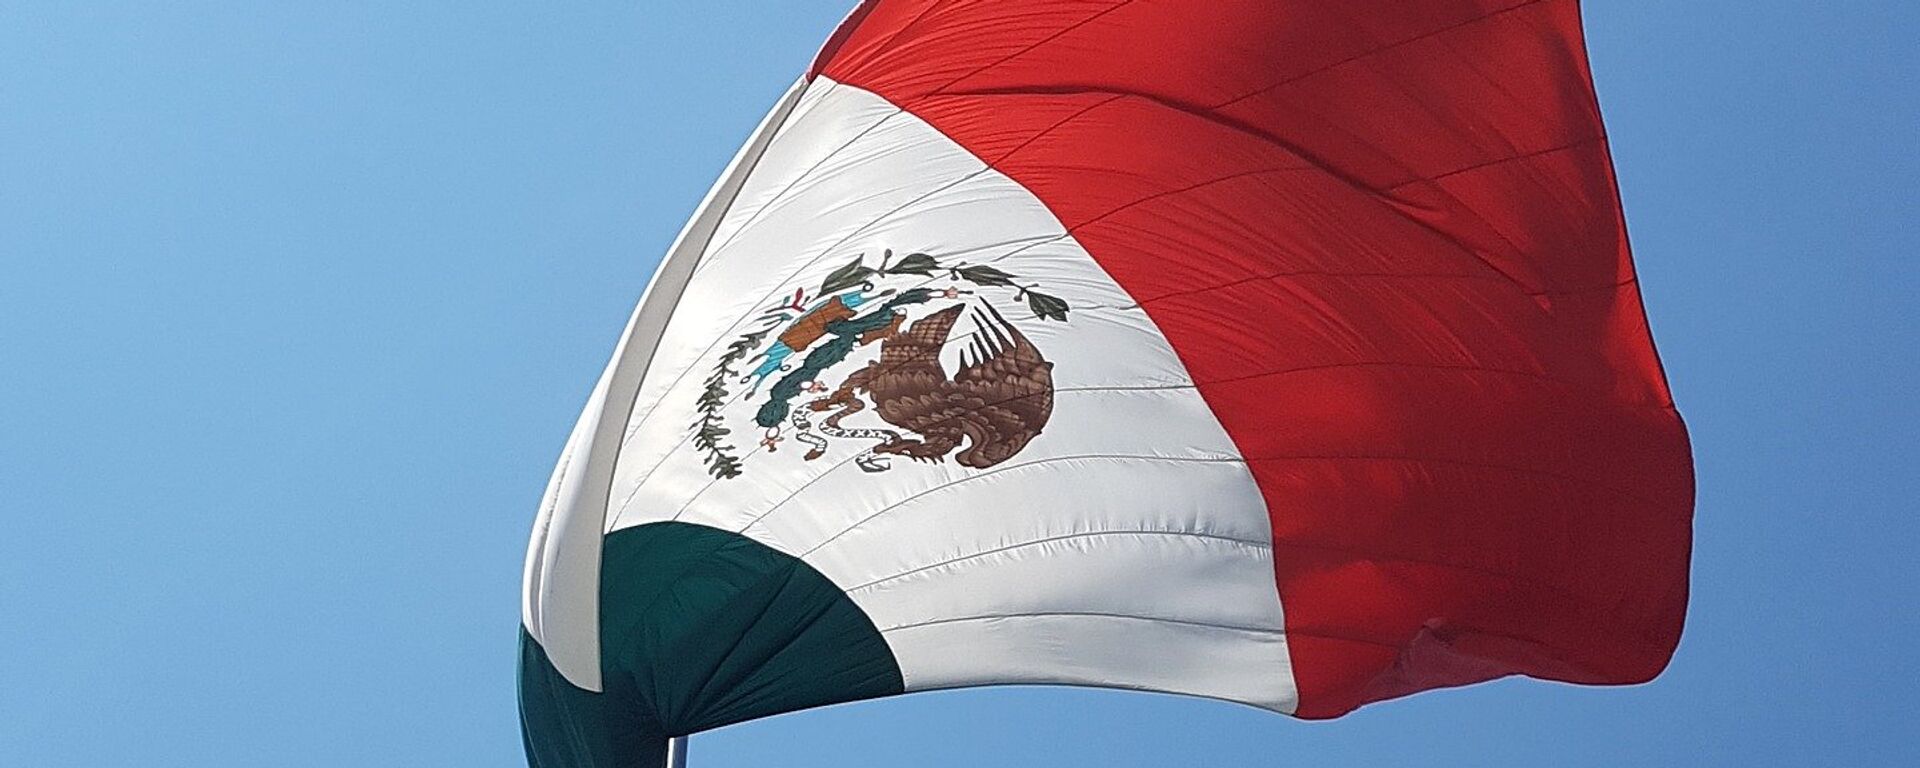 Bandera de México - Sputnik Mundo, 1920, 23.02.2019